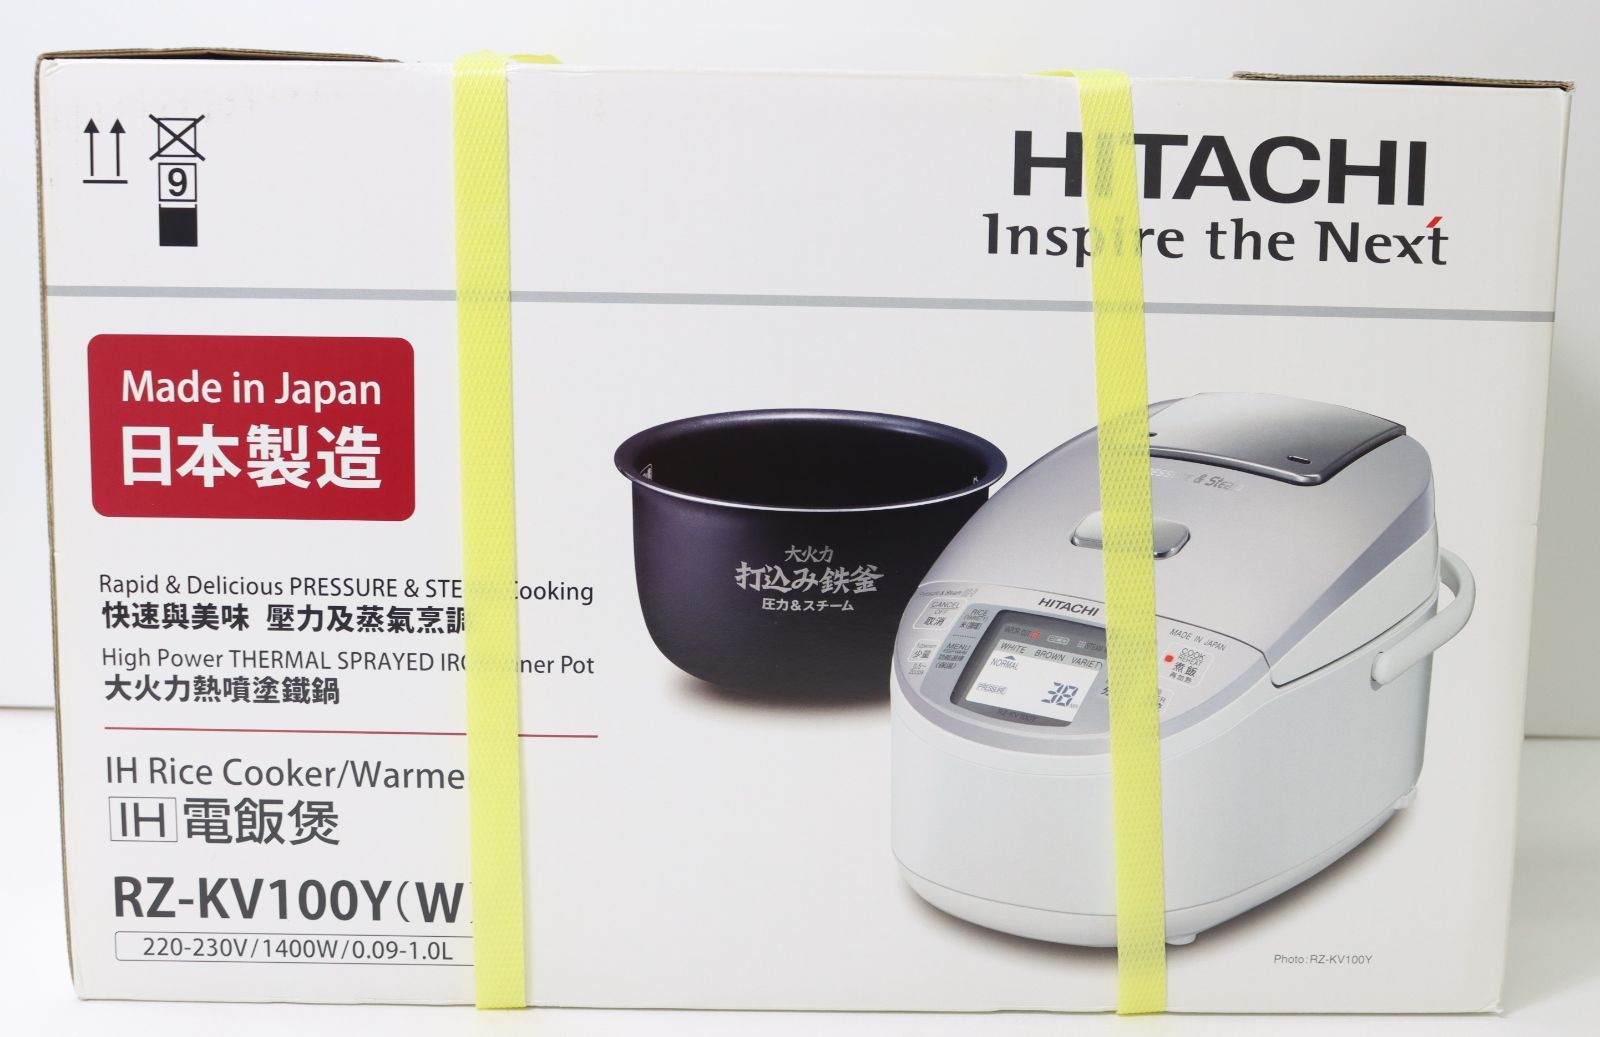 HITACHI IH炊飯器 海外向け - 炊飯器